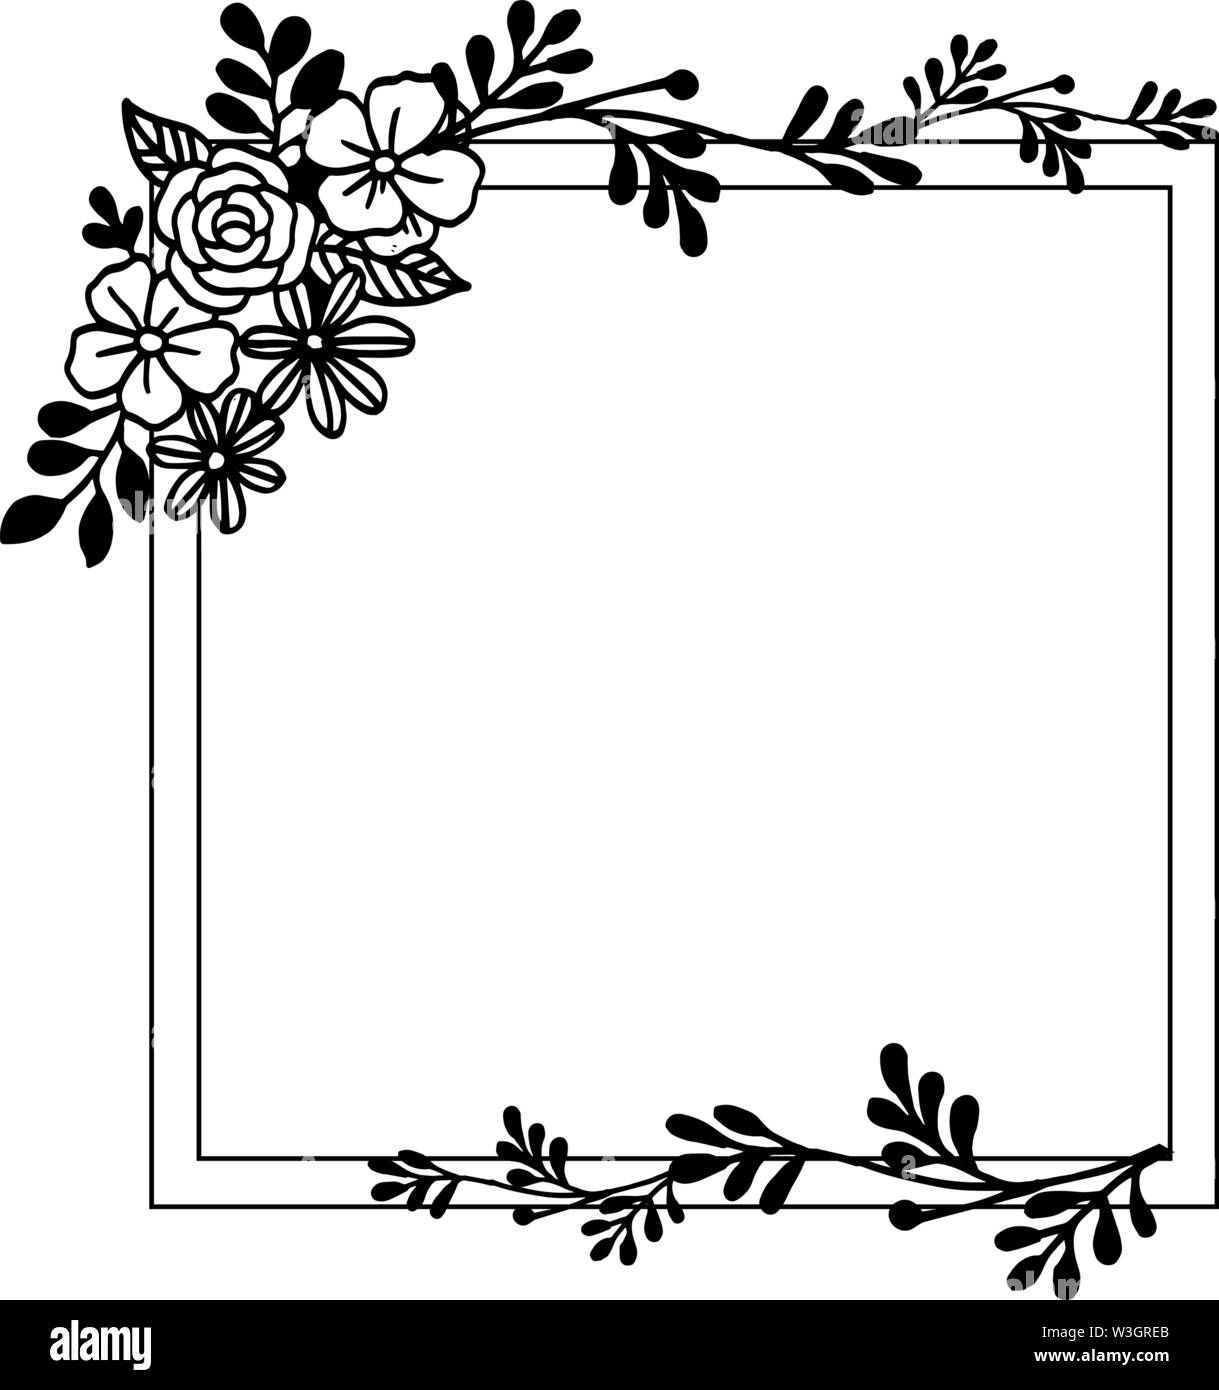 Flower Frame Decorative Border For Banner Vector Illustration Stock Vector Image Art Alamy